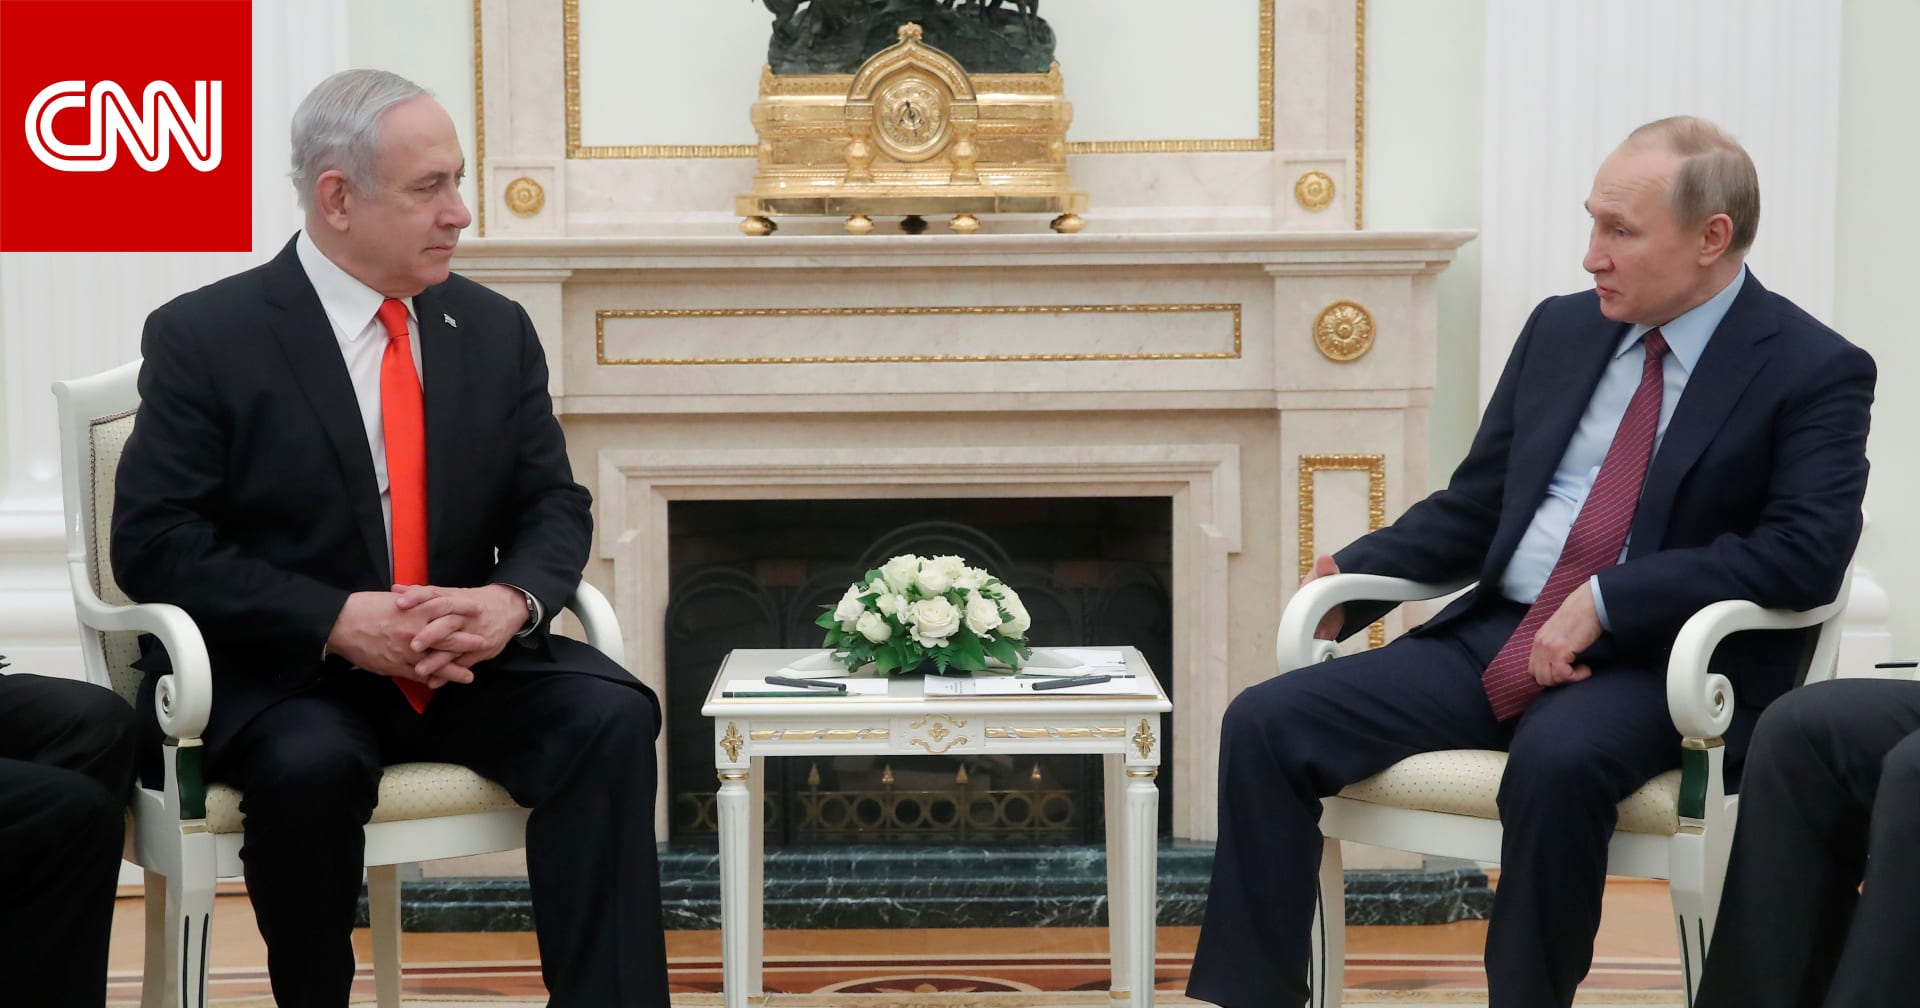 الكرملين يعلن ما قاله بوتين لنتنياهو بشأن إمكانية إنهاء الصراع مع "حماس"